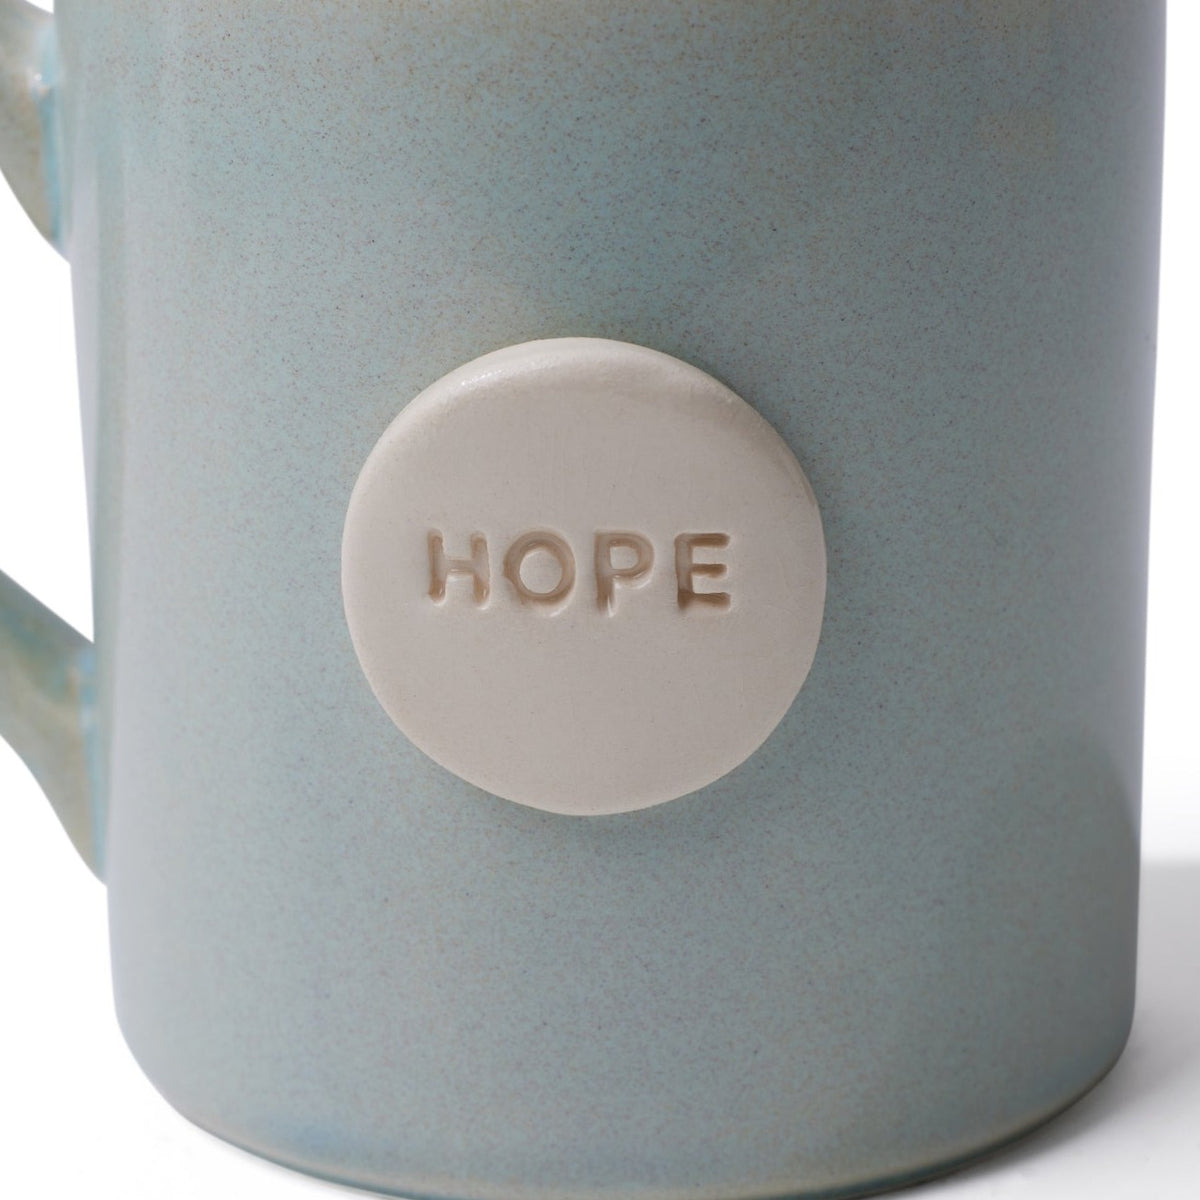 Hope Ceramic Mug